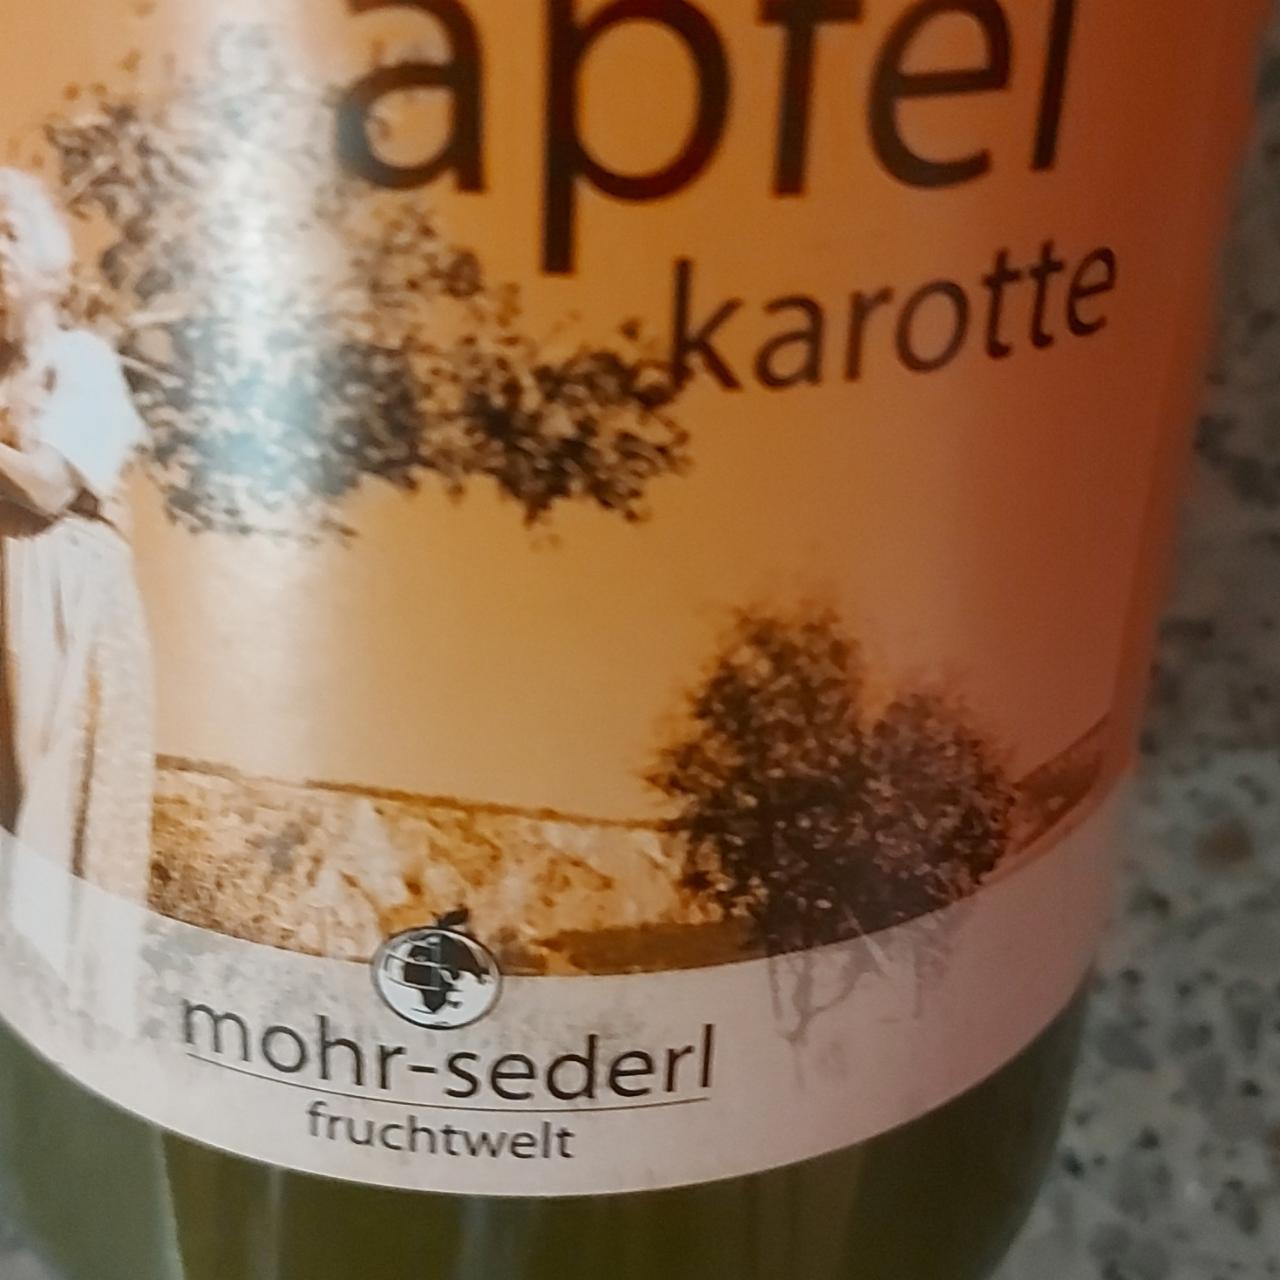 Fotografie - apfel karotte Mohr sederl fruchtwelt